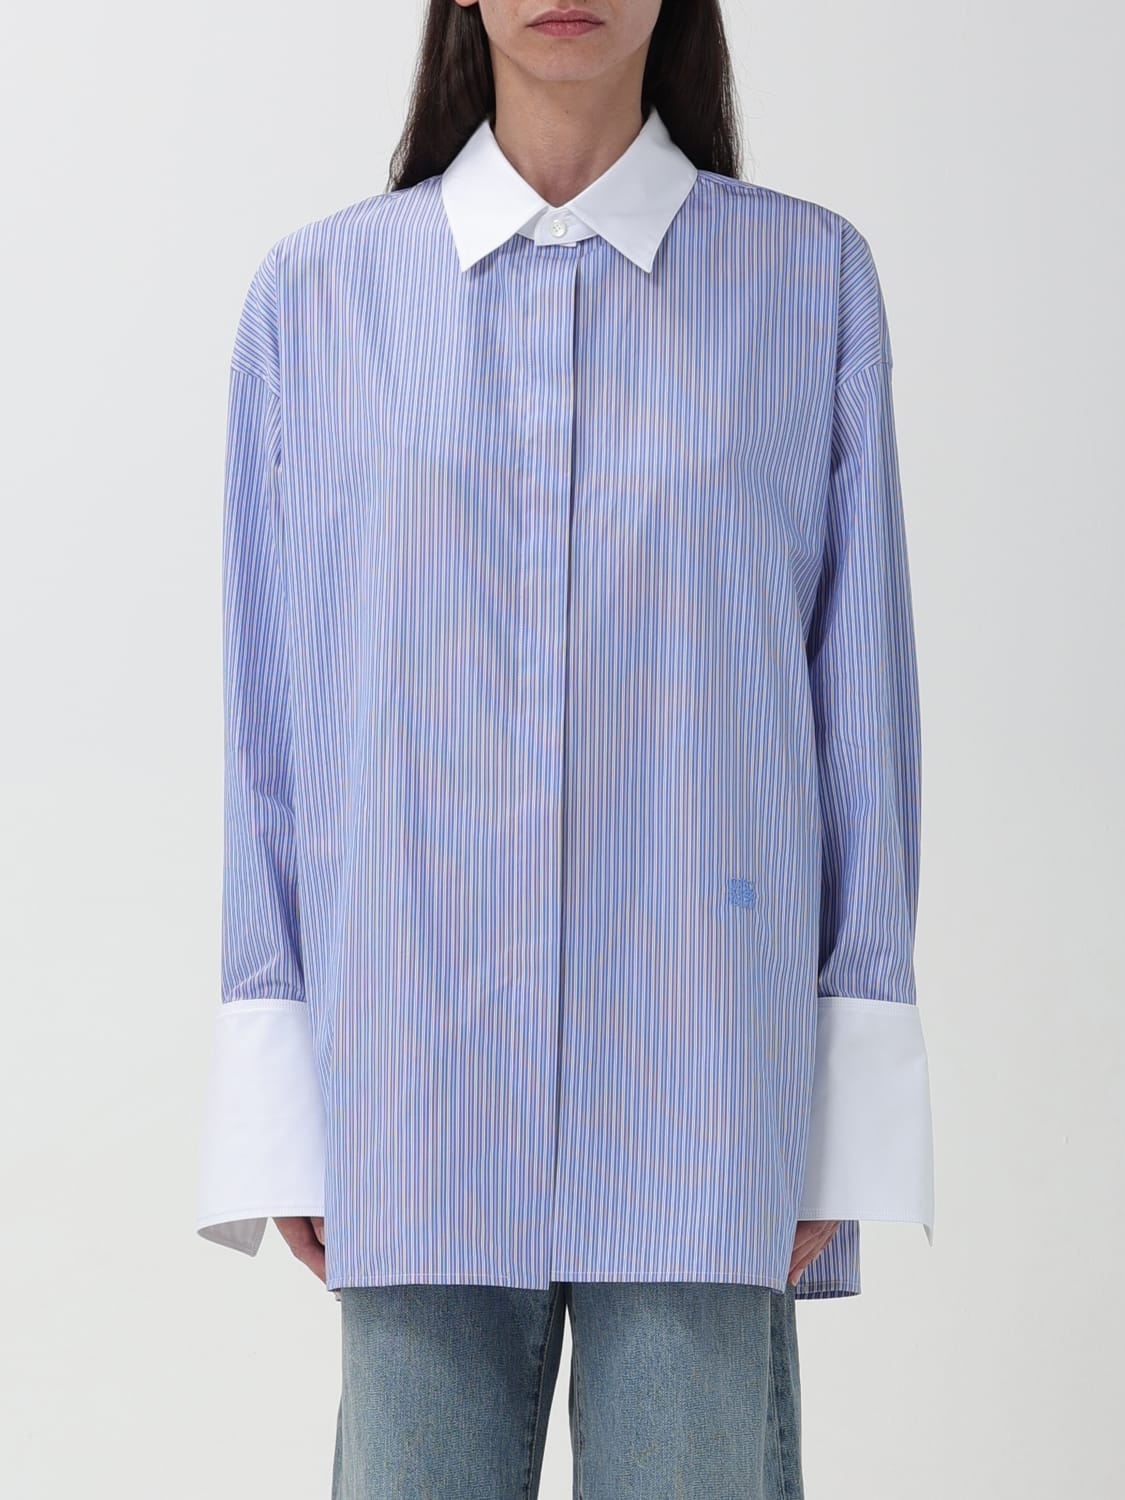 LOEWE: Shirt woman - Blue | LOEWE shirt S359Y05XBN online at